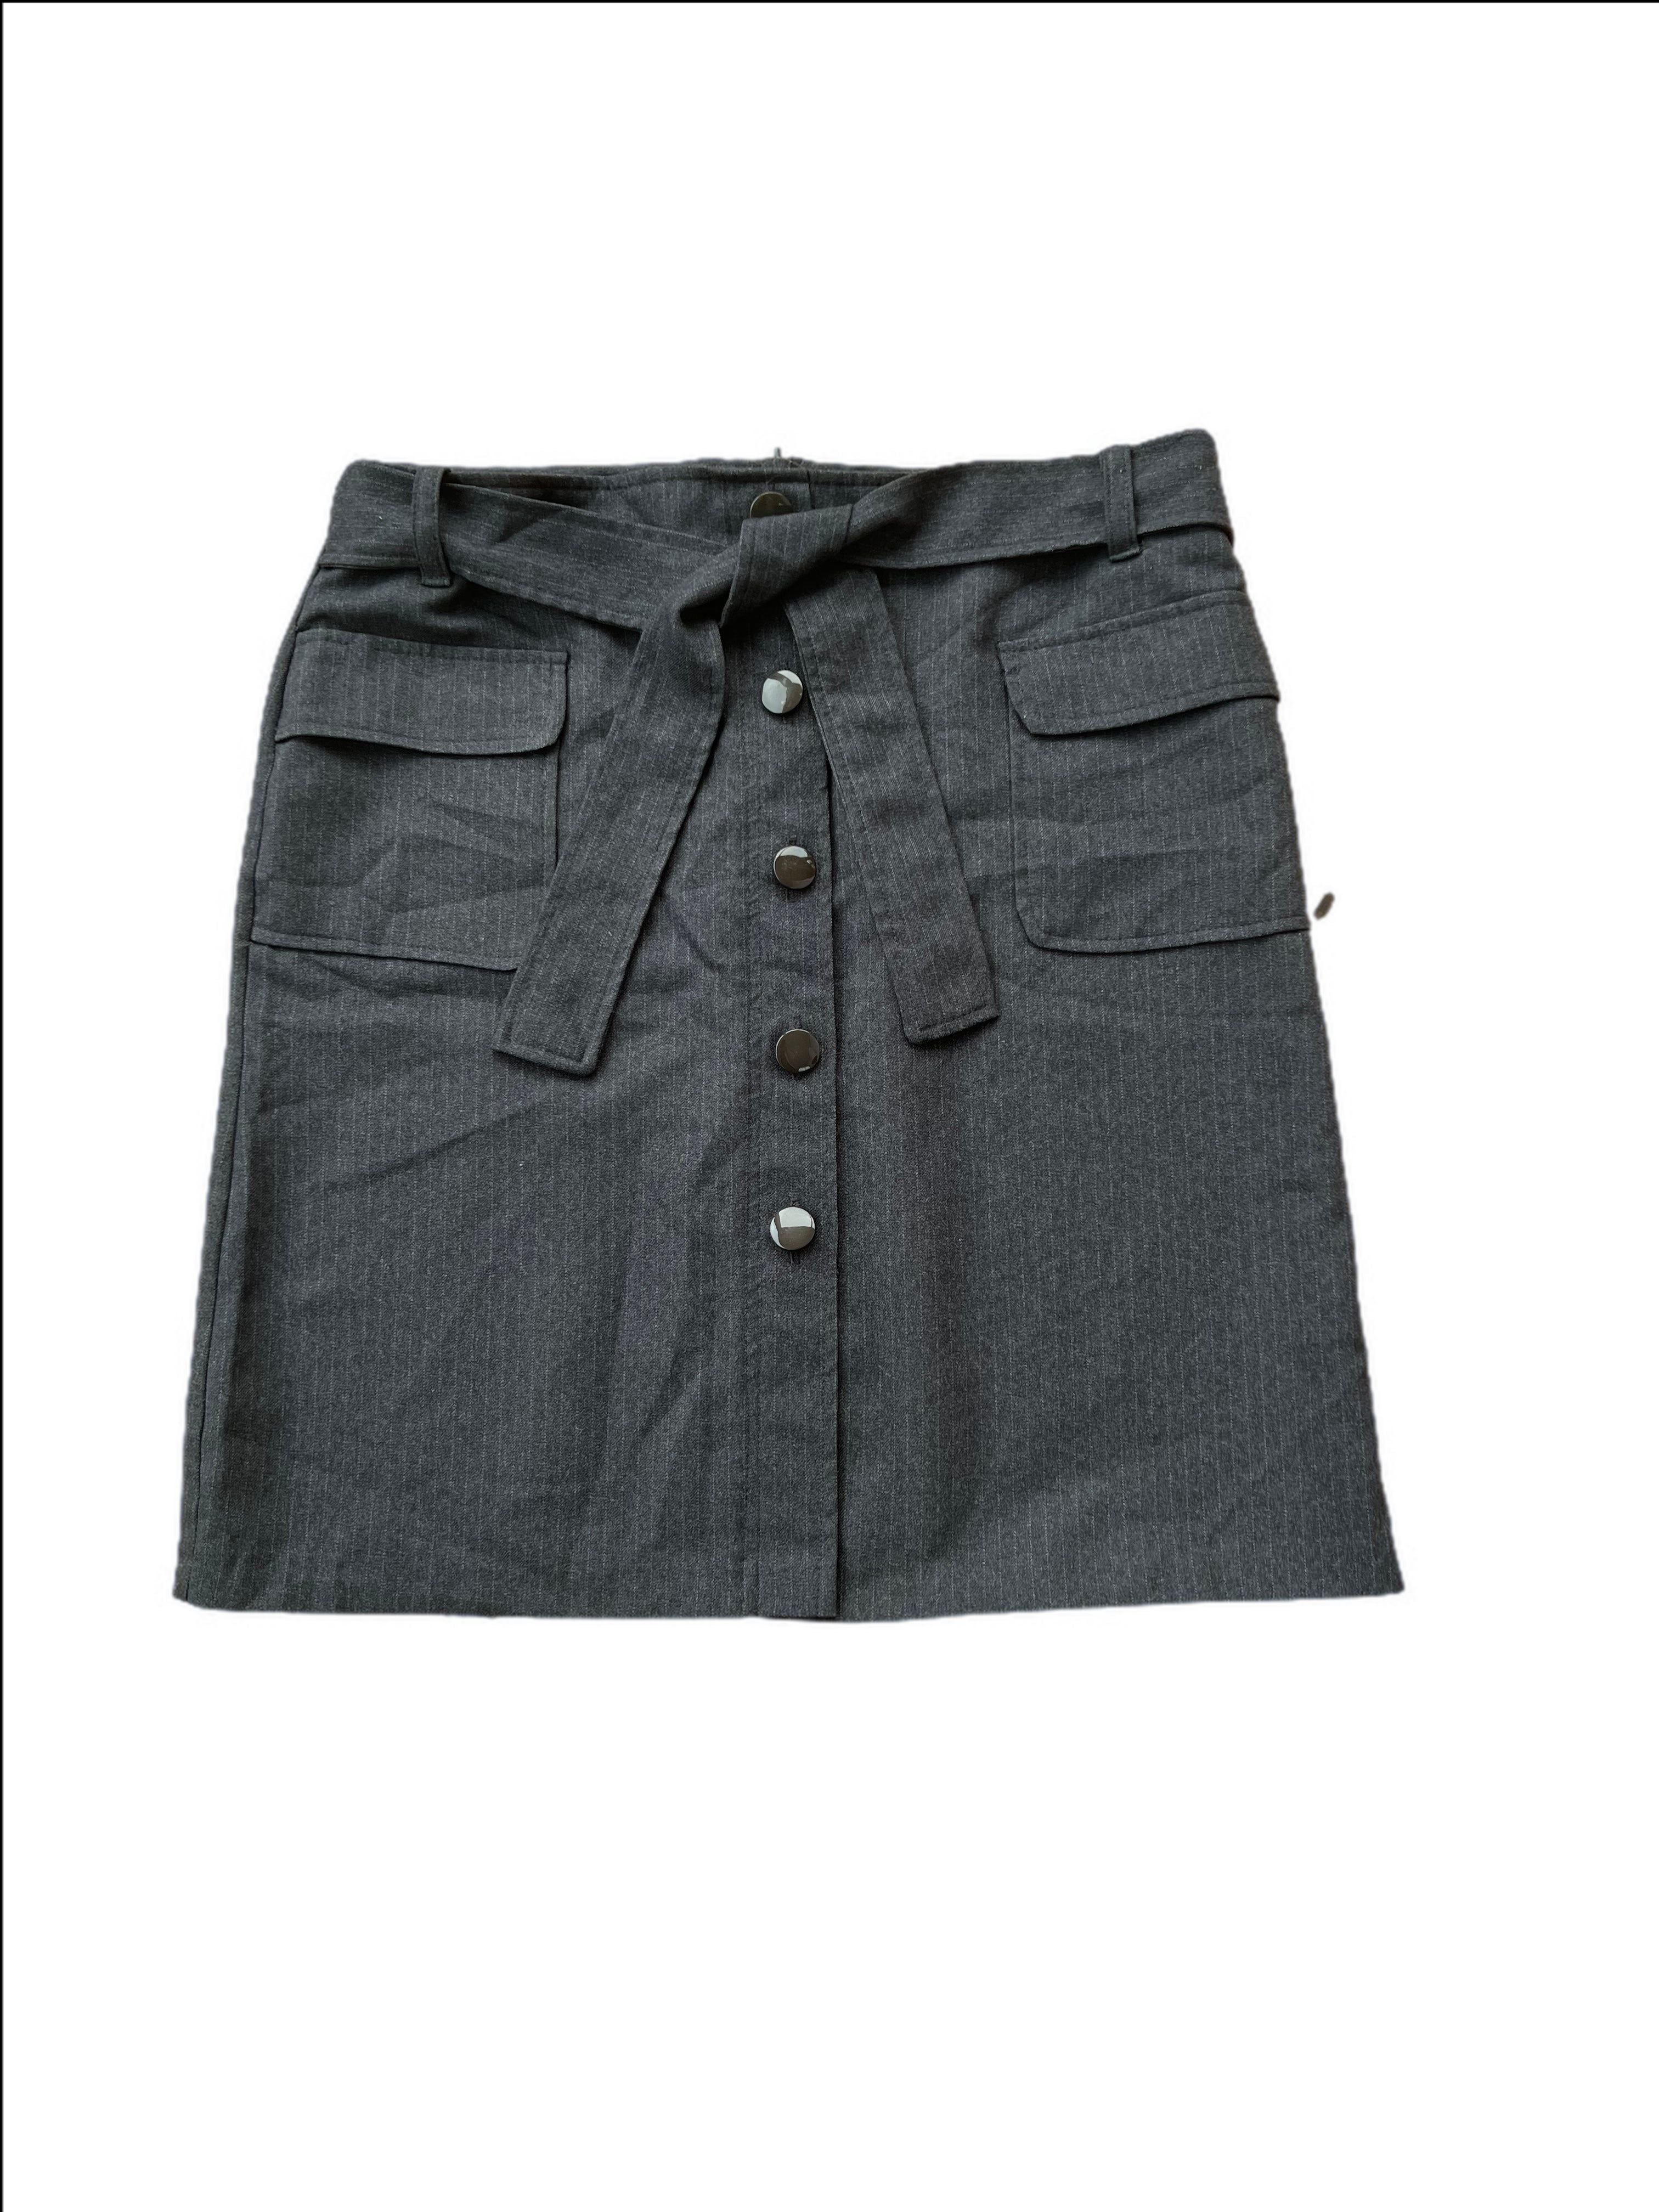 Pinstripe  button up skirt